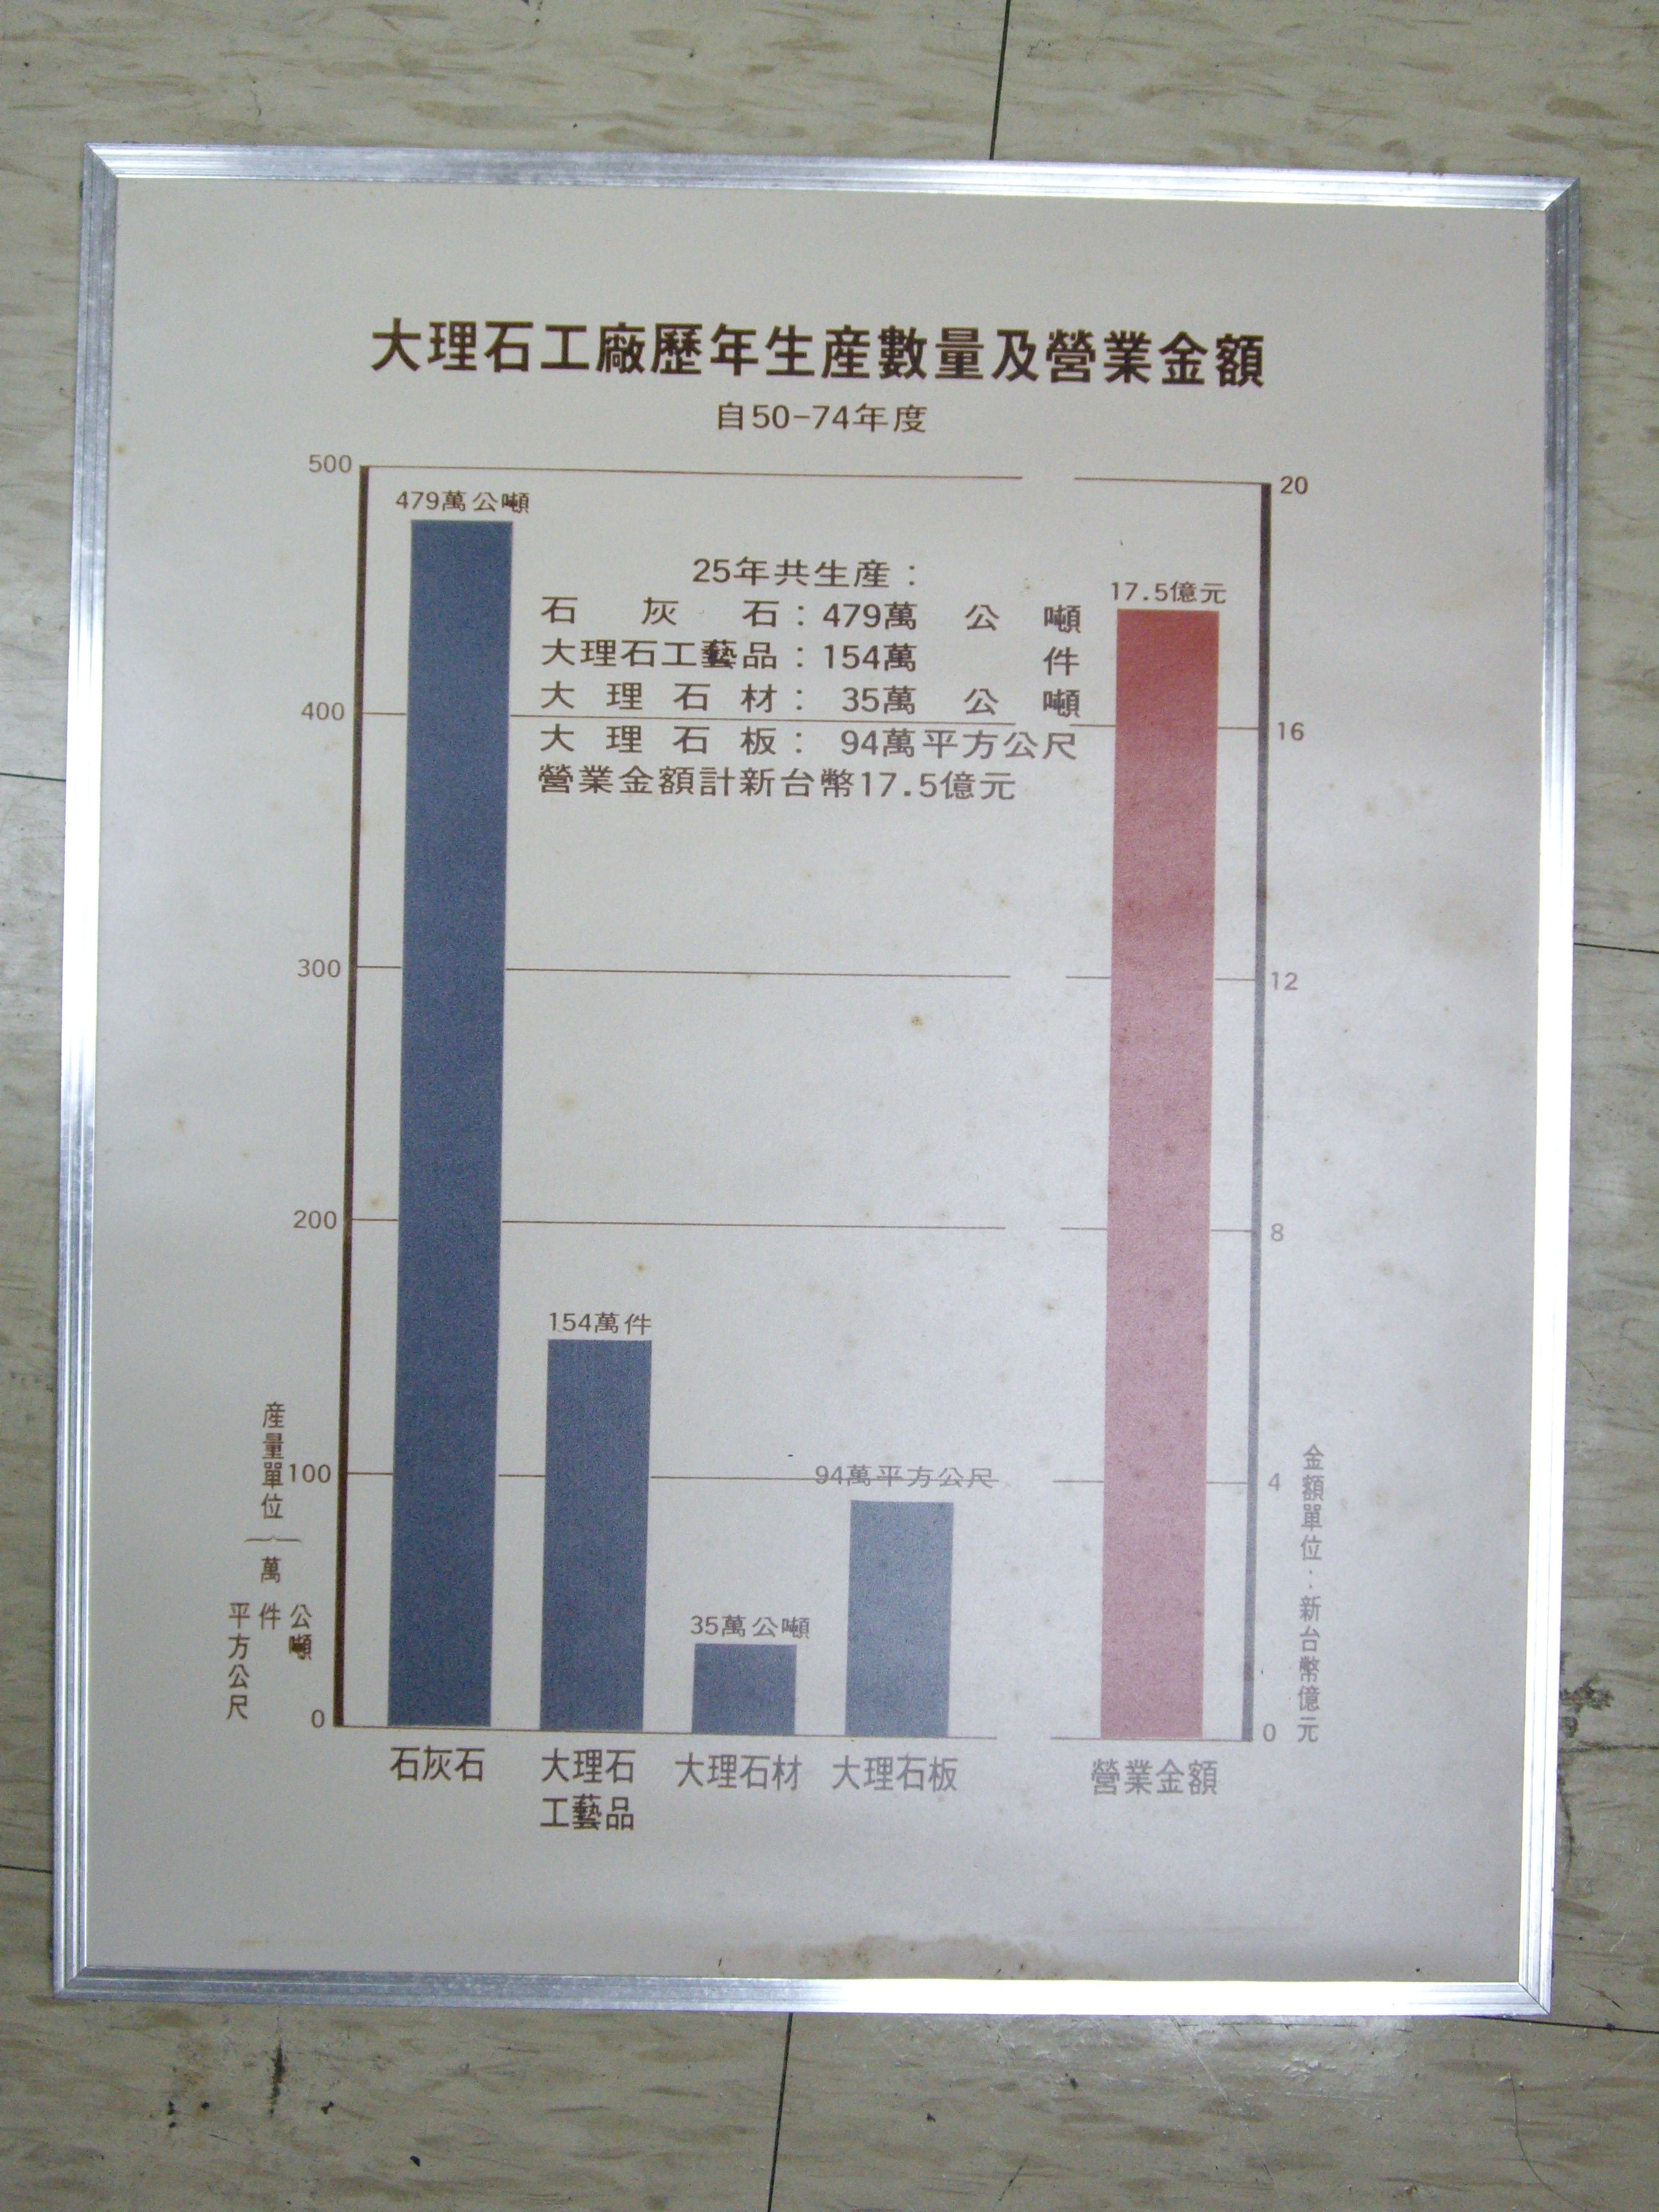 大理石工廠歷年生產數量及營業金額(裱框照)